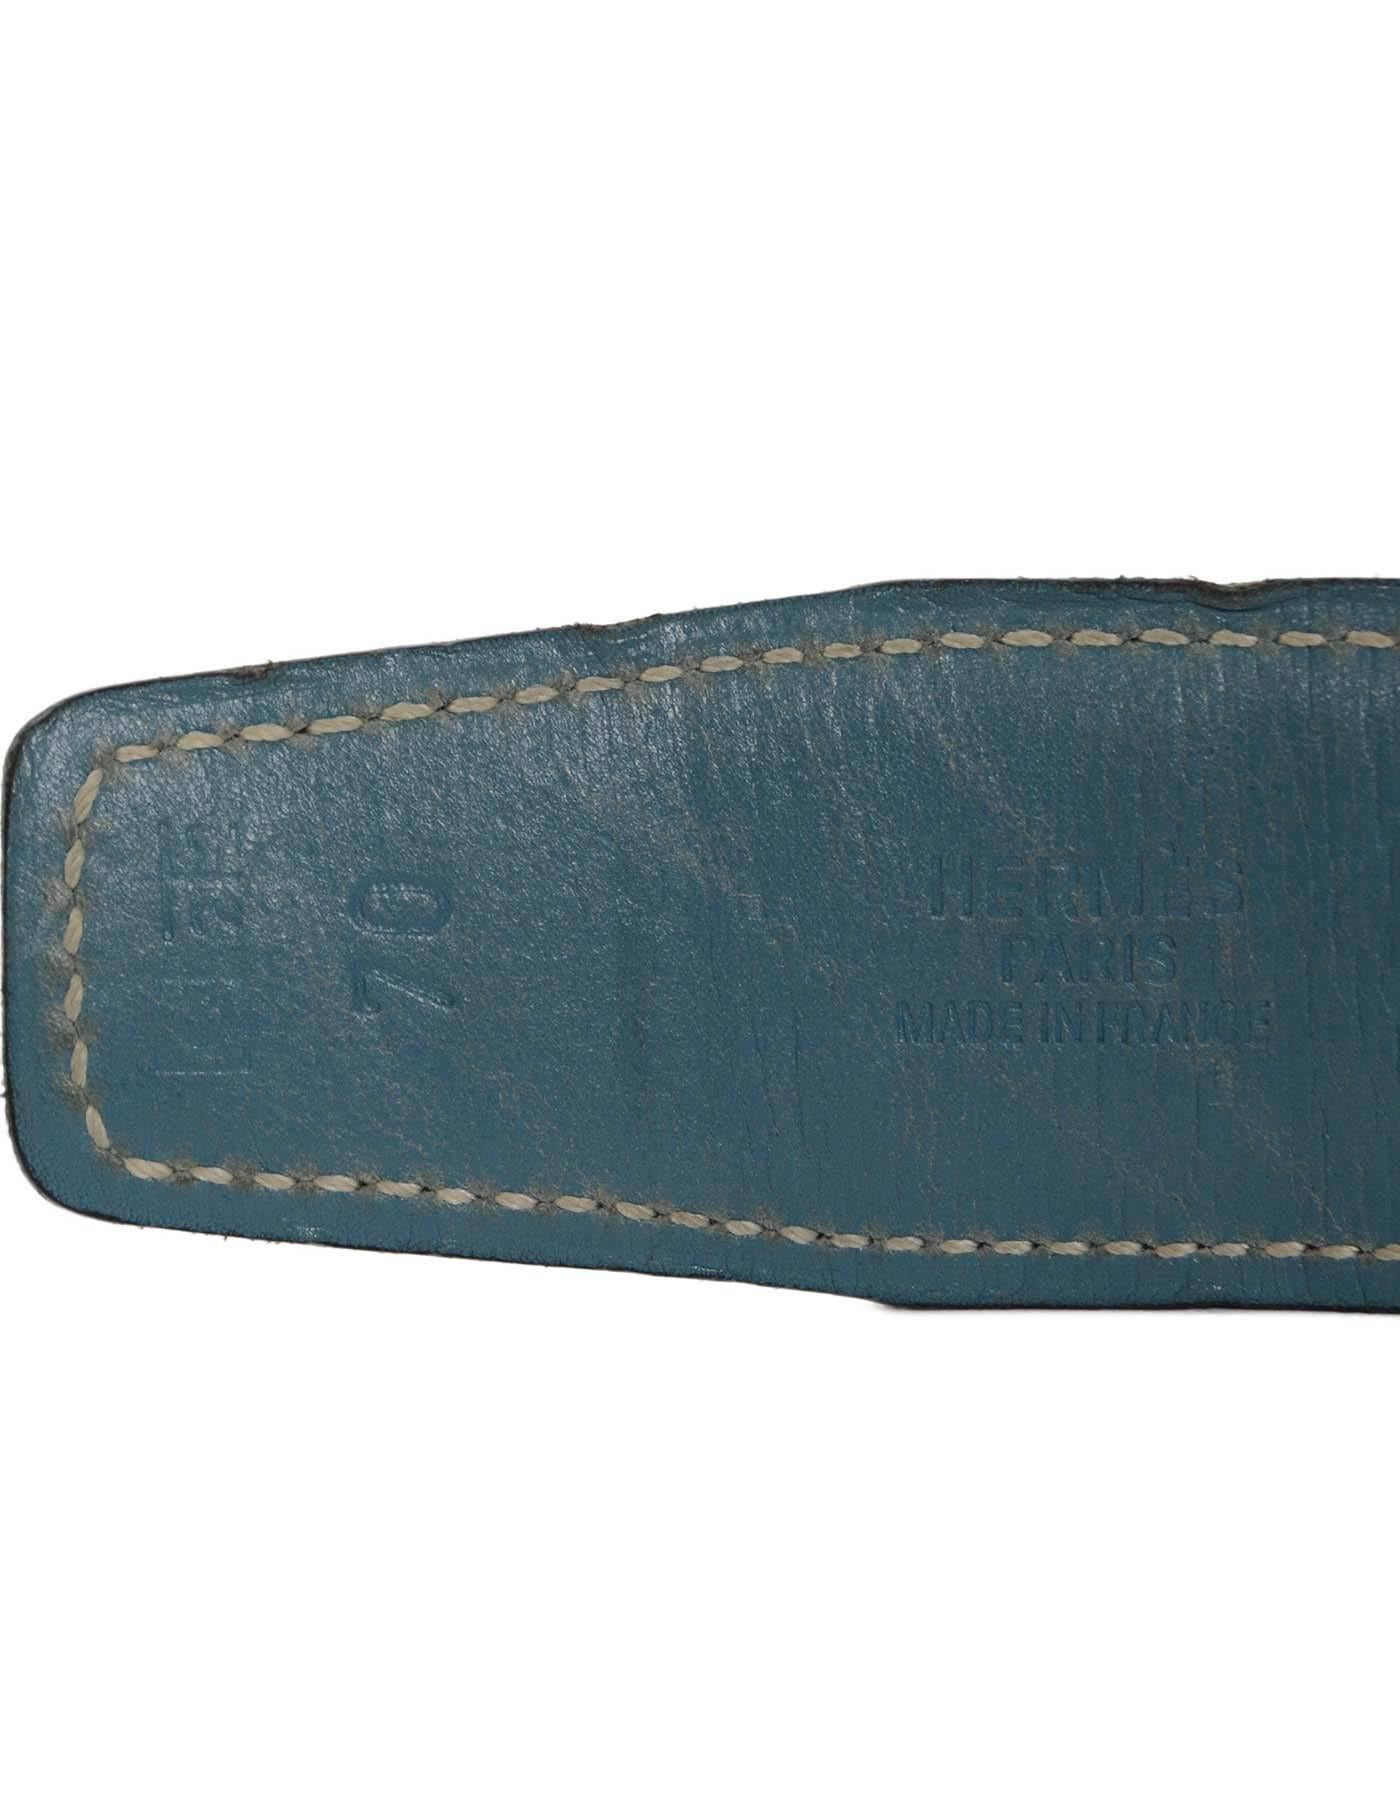 Hermes Vintage '99 Black & Blue Leather H Leather Belt sz 70 PHW 1